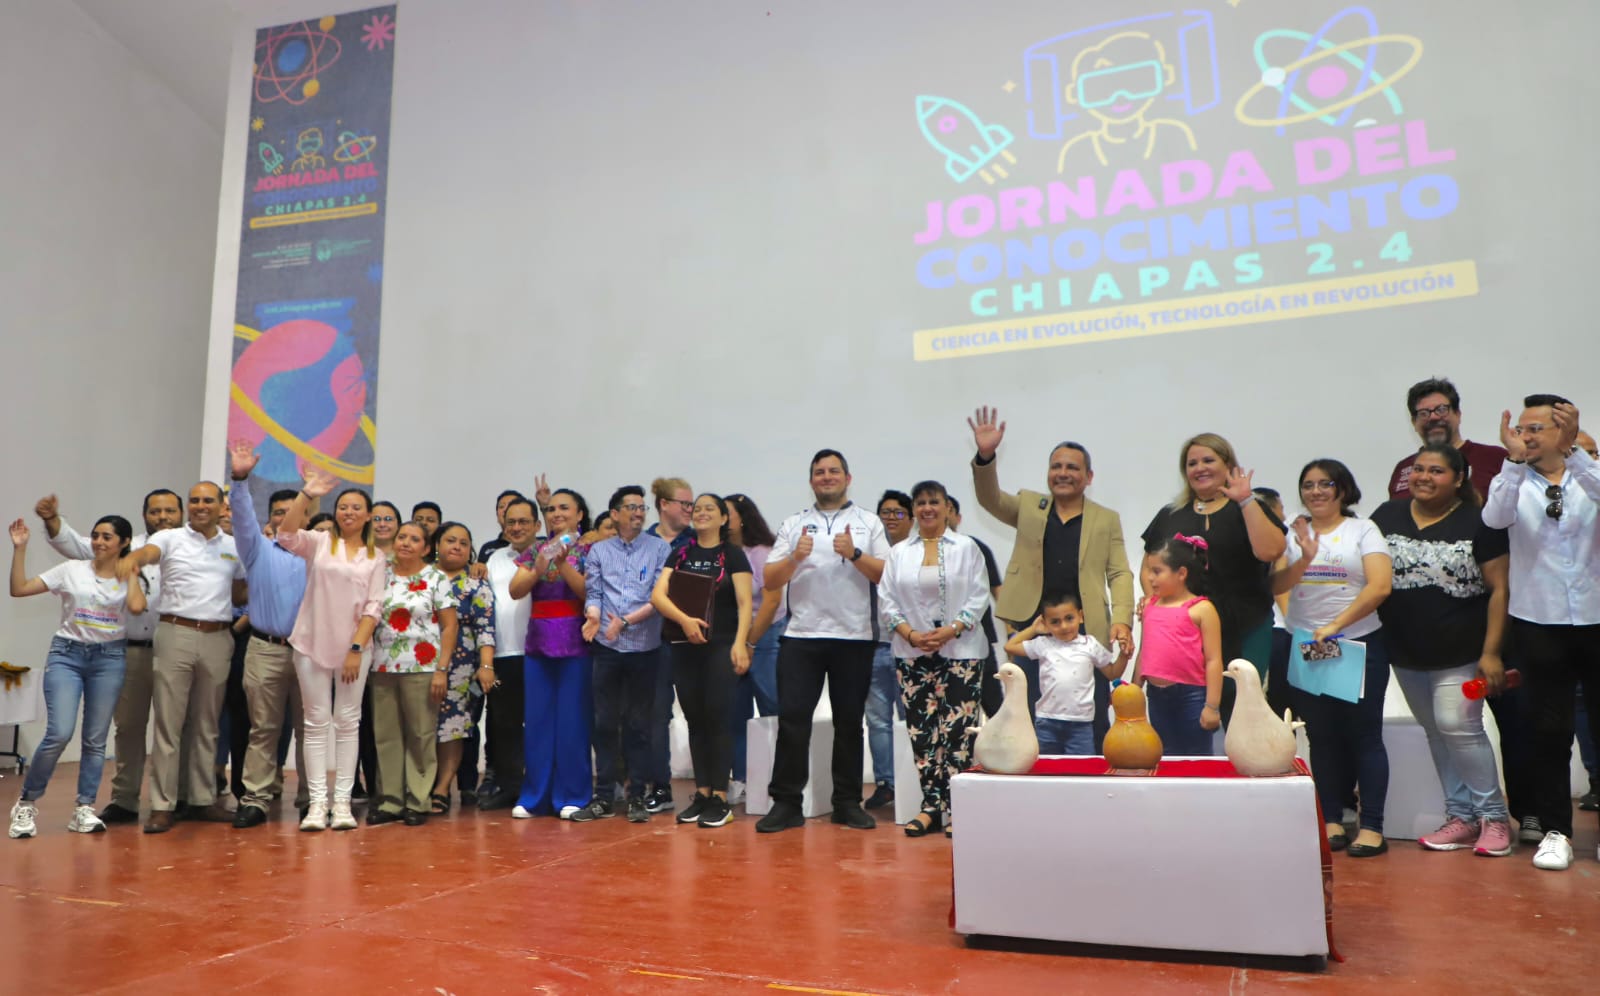 Con gran éxito, concluye la Jornada del conocimiento Chiapas 2.4 